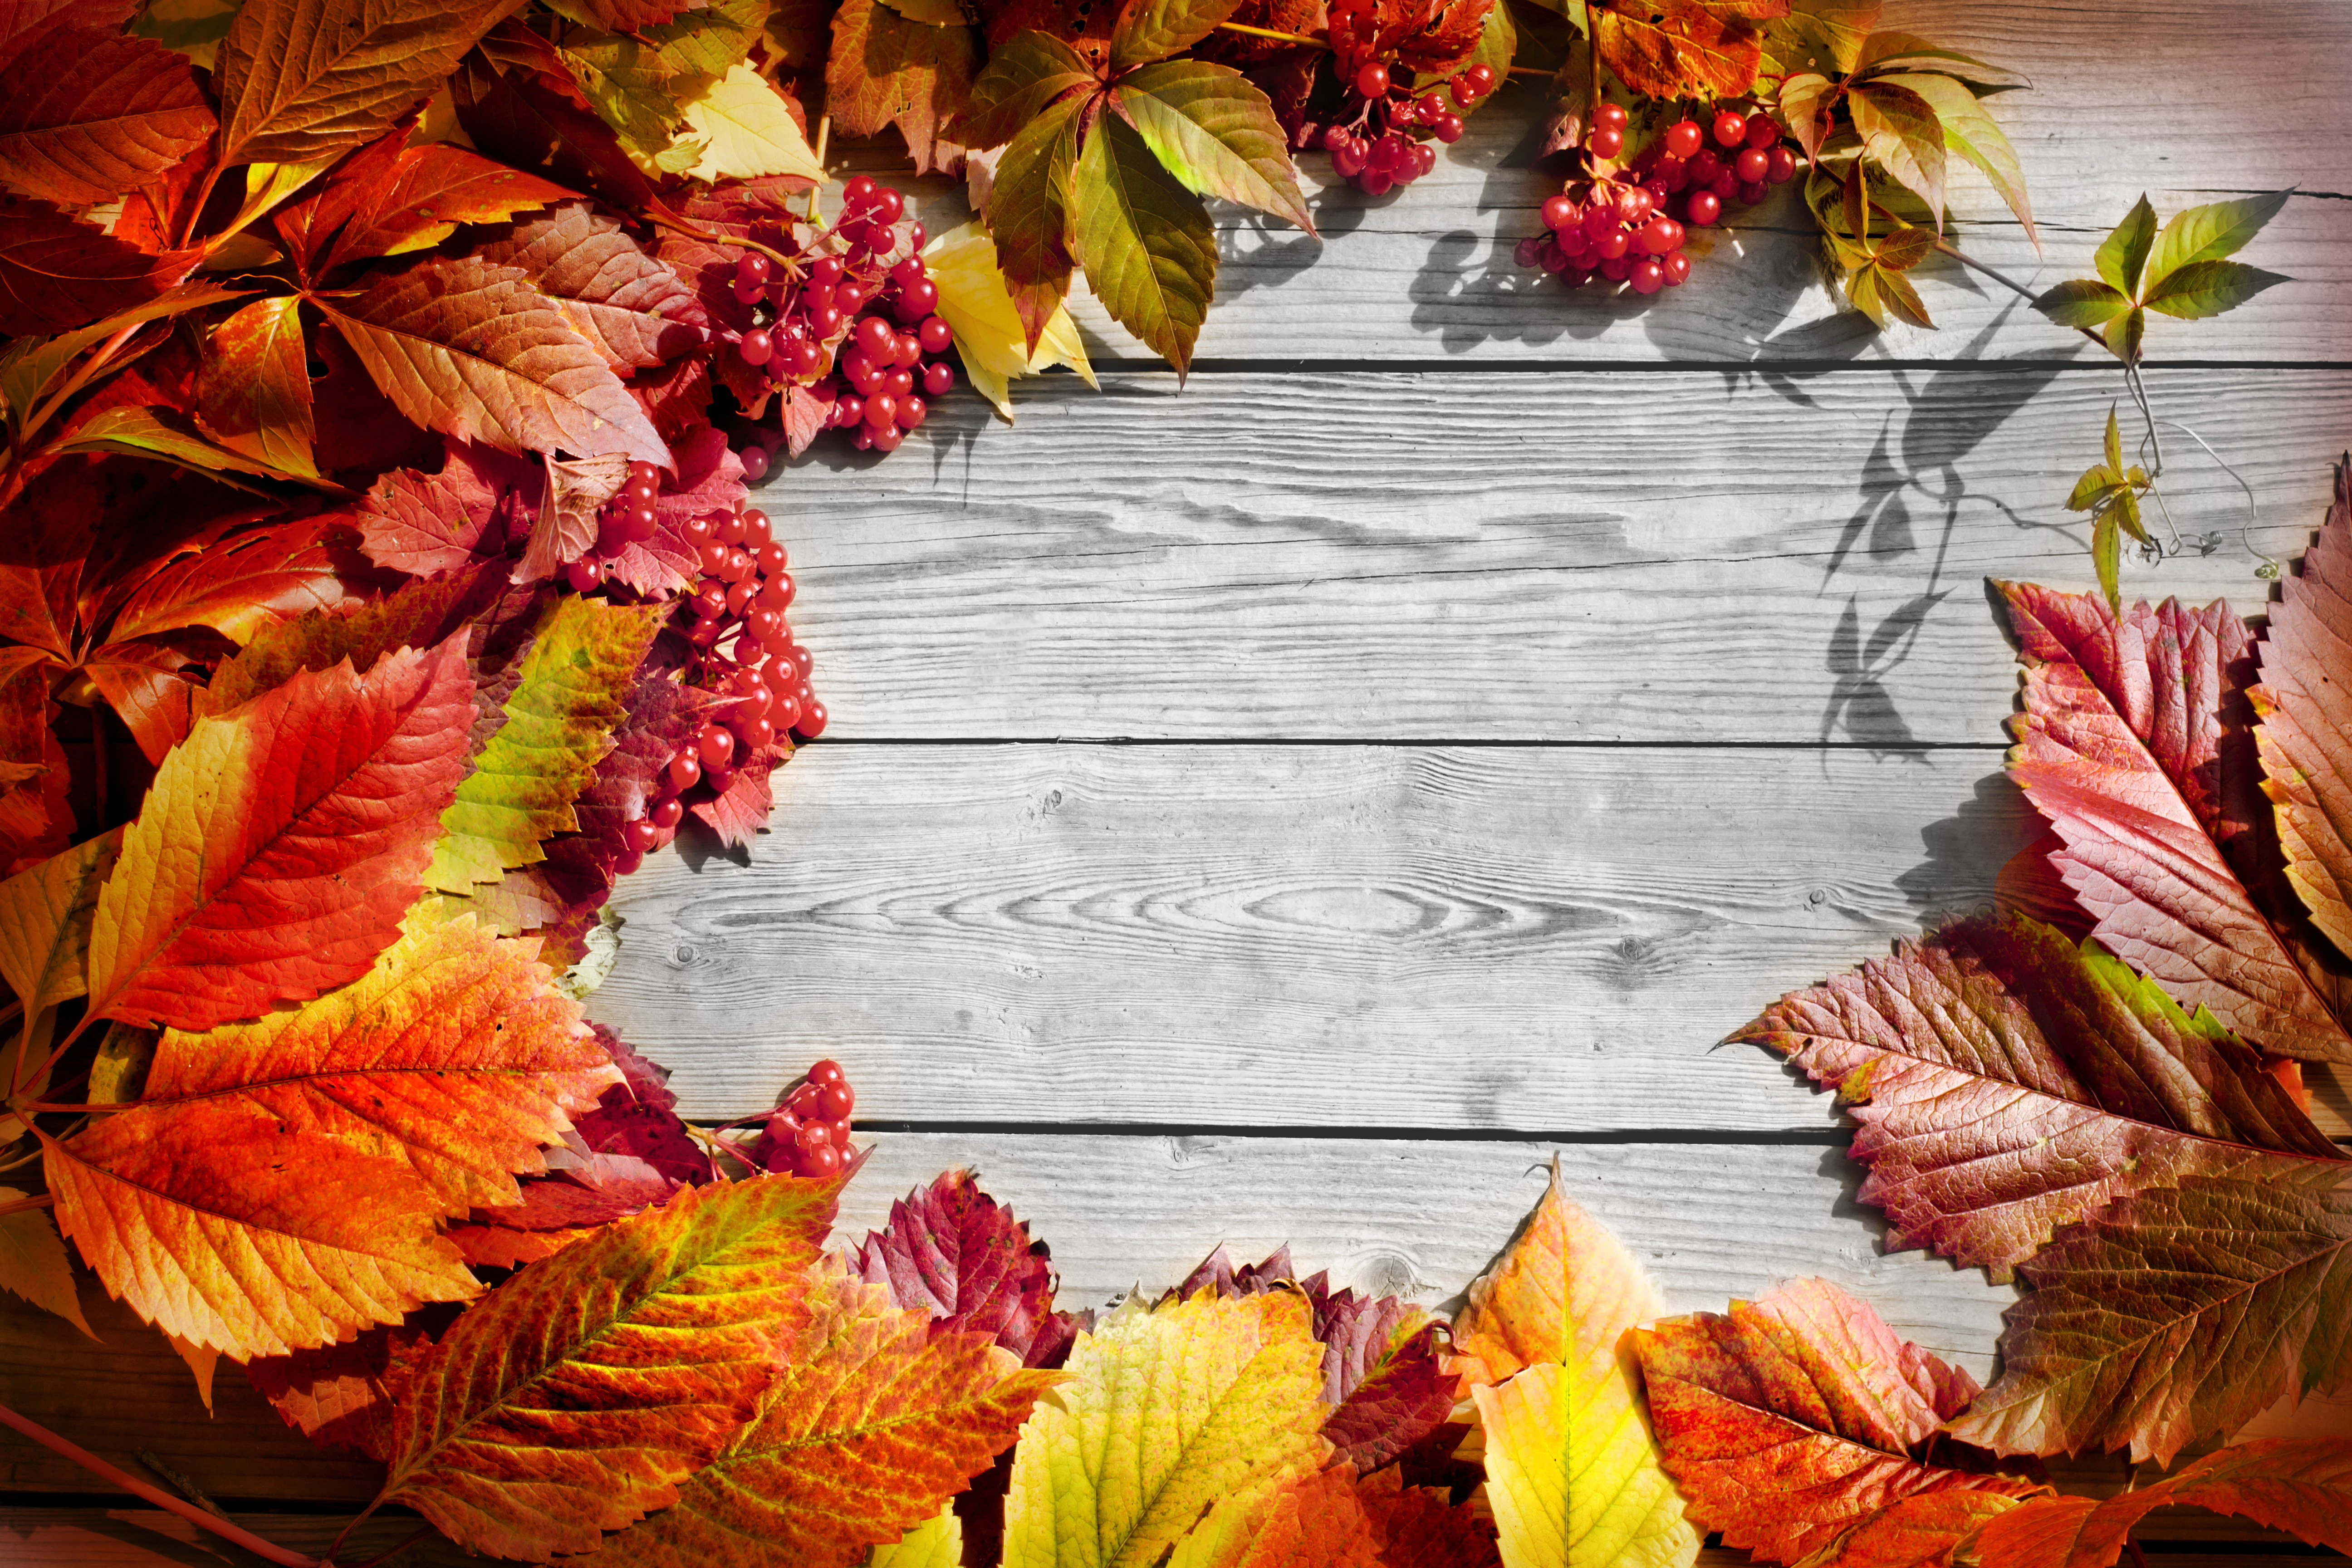 Фоны для фотографий с осенней листвой